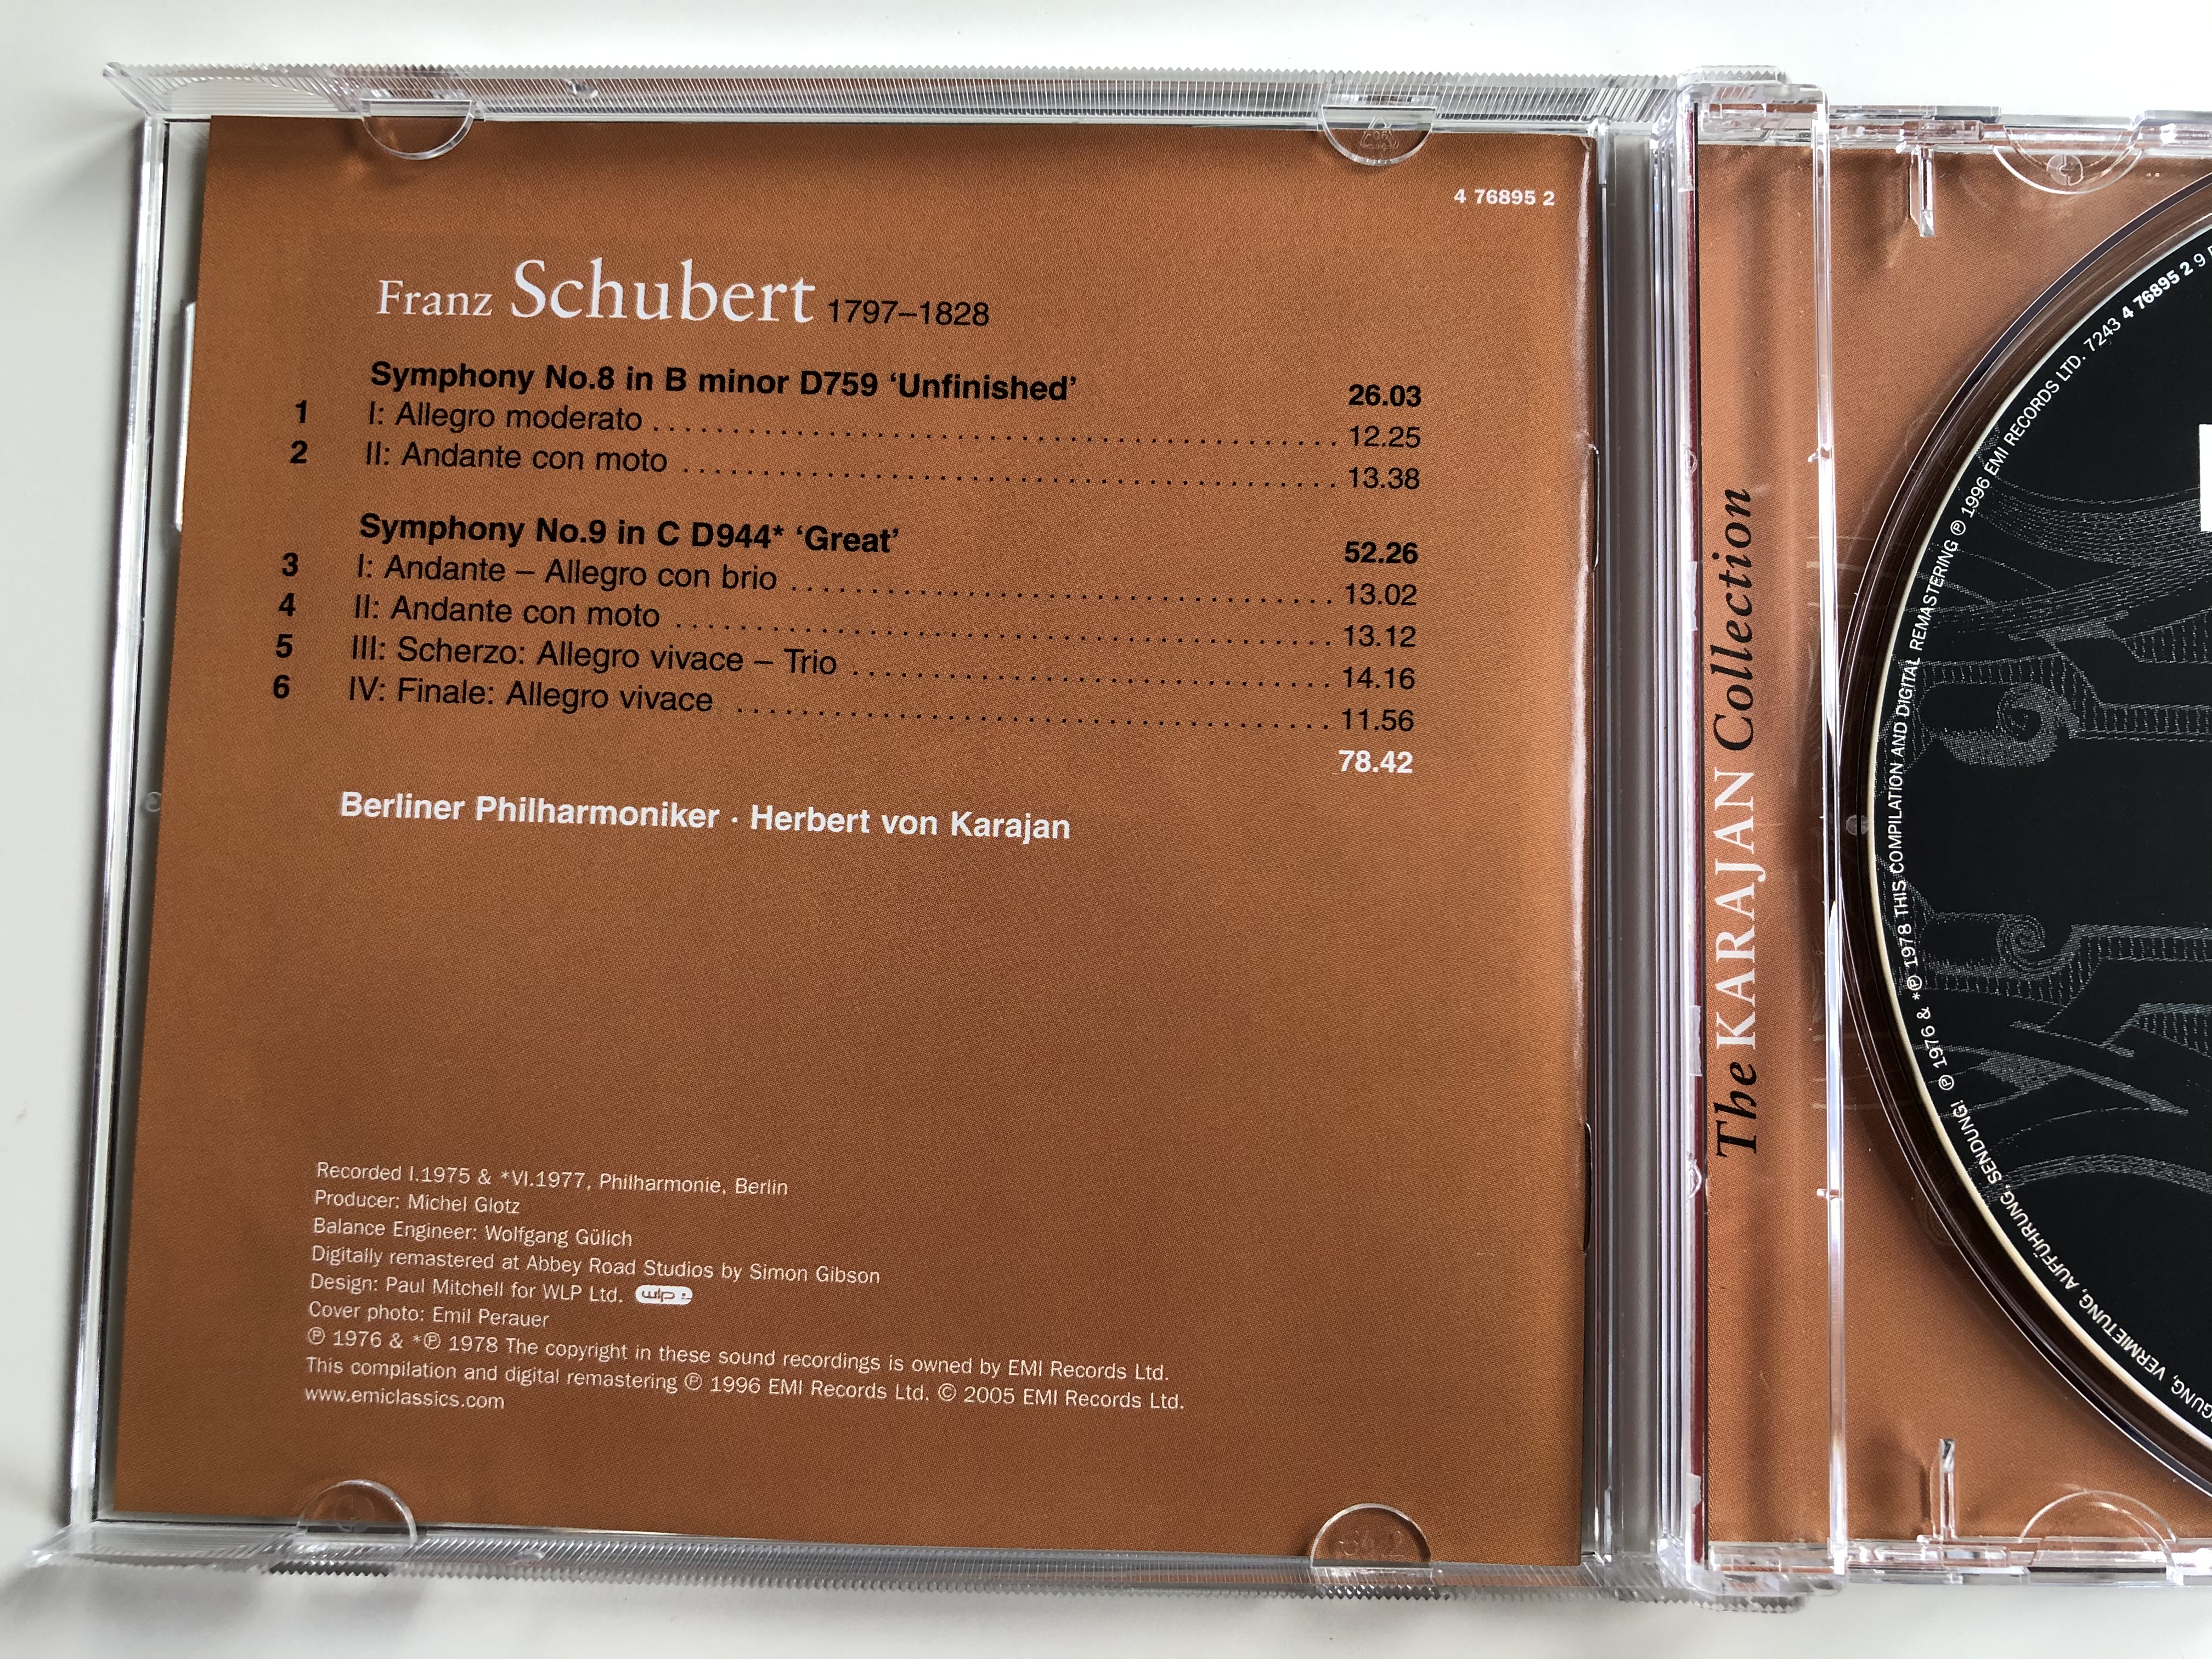 the-karajan-collection-schubert-symphonies-8-9-berliner-philharmoniker-herbert-von-karajan-emi-classics-audio-cd-stereo-7243-4-76895-2-9-5-.jpg